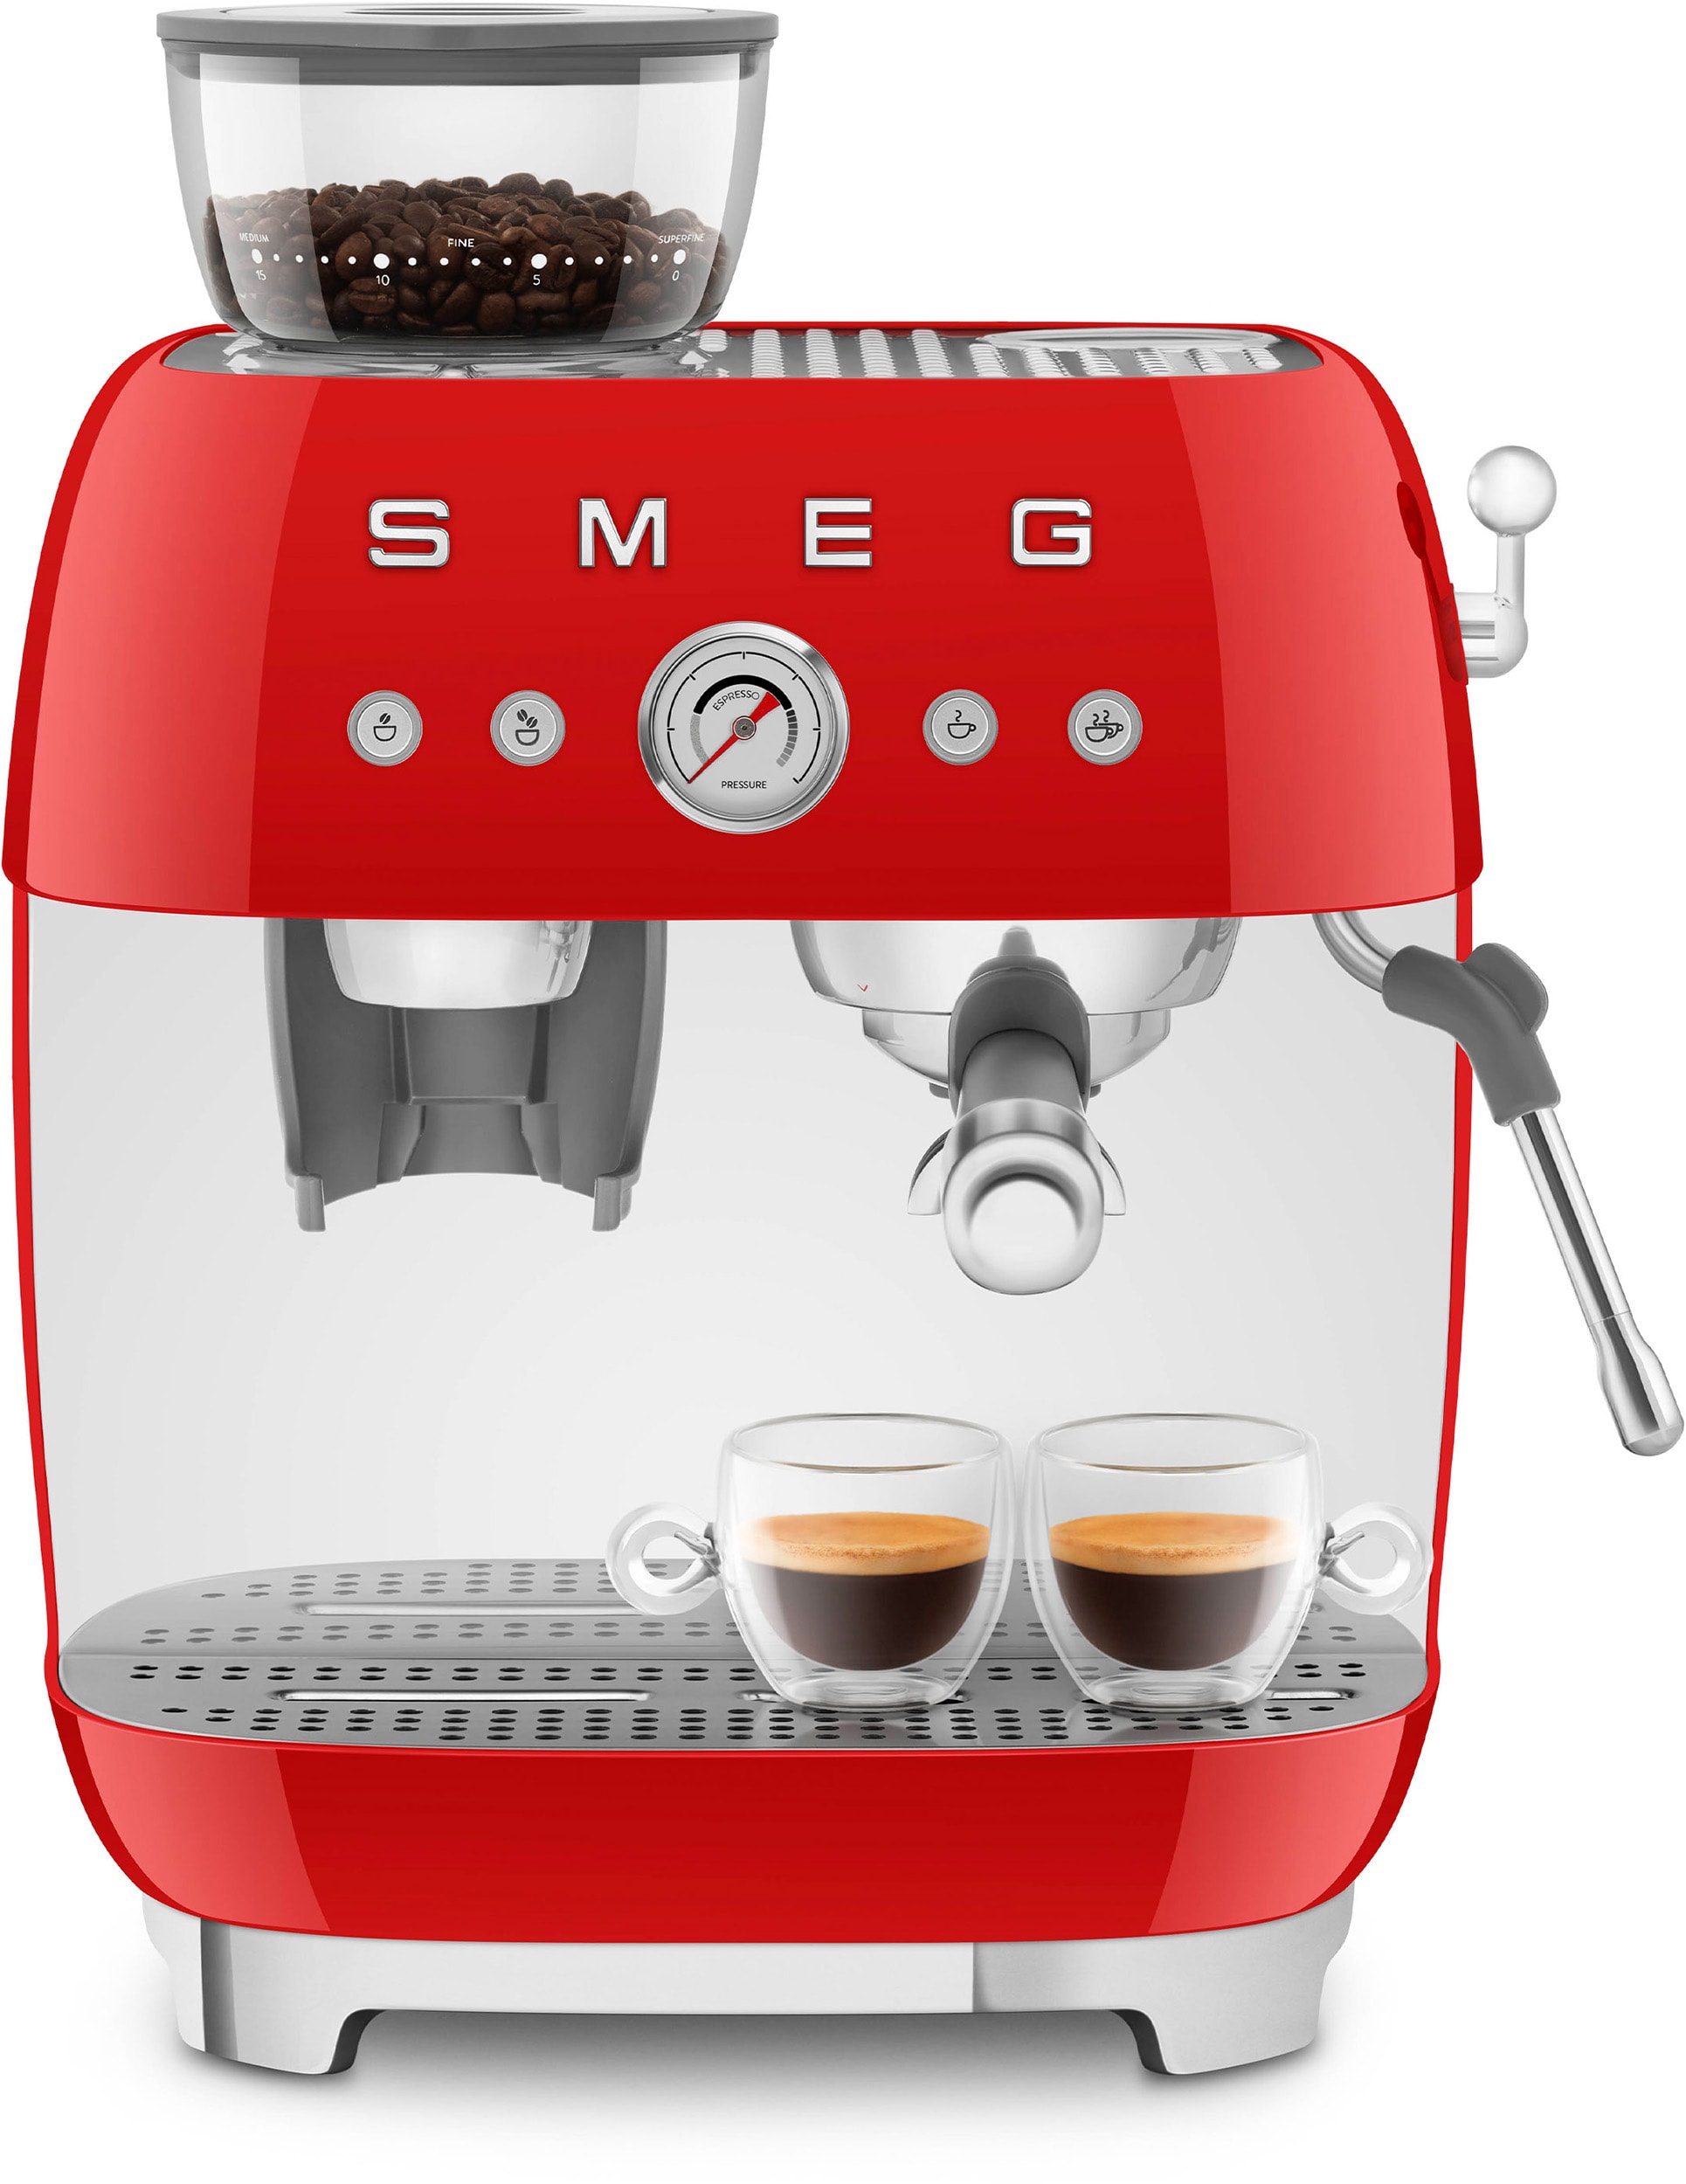 Machine broyeur à café en grains SMEG / Années 50 / Café moulu